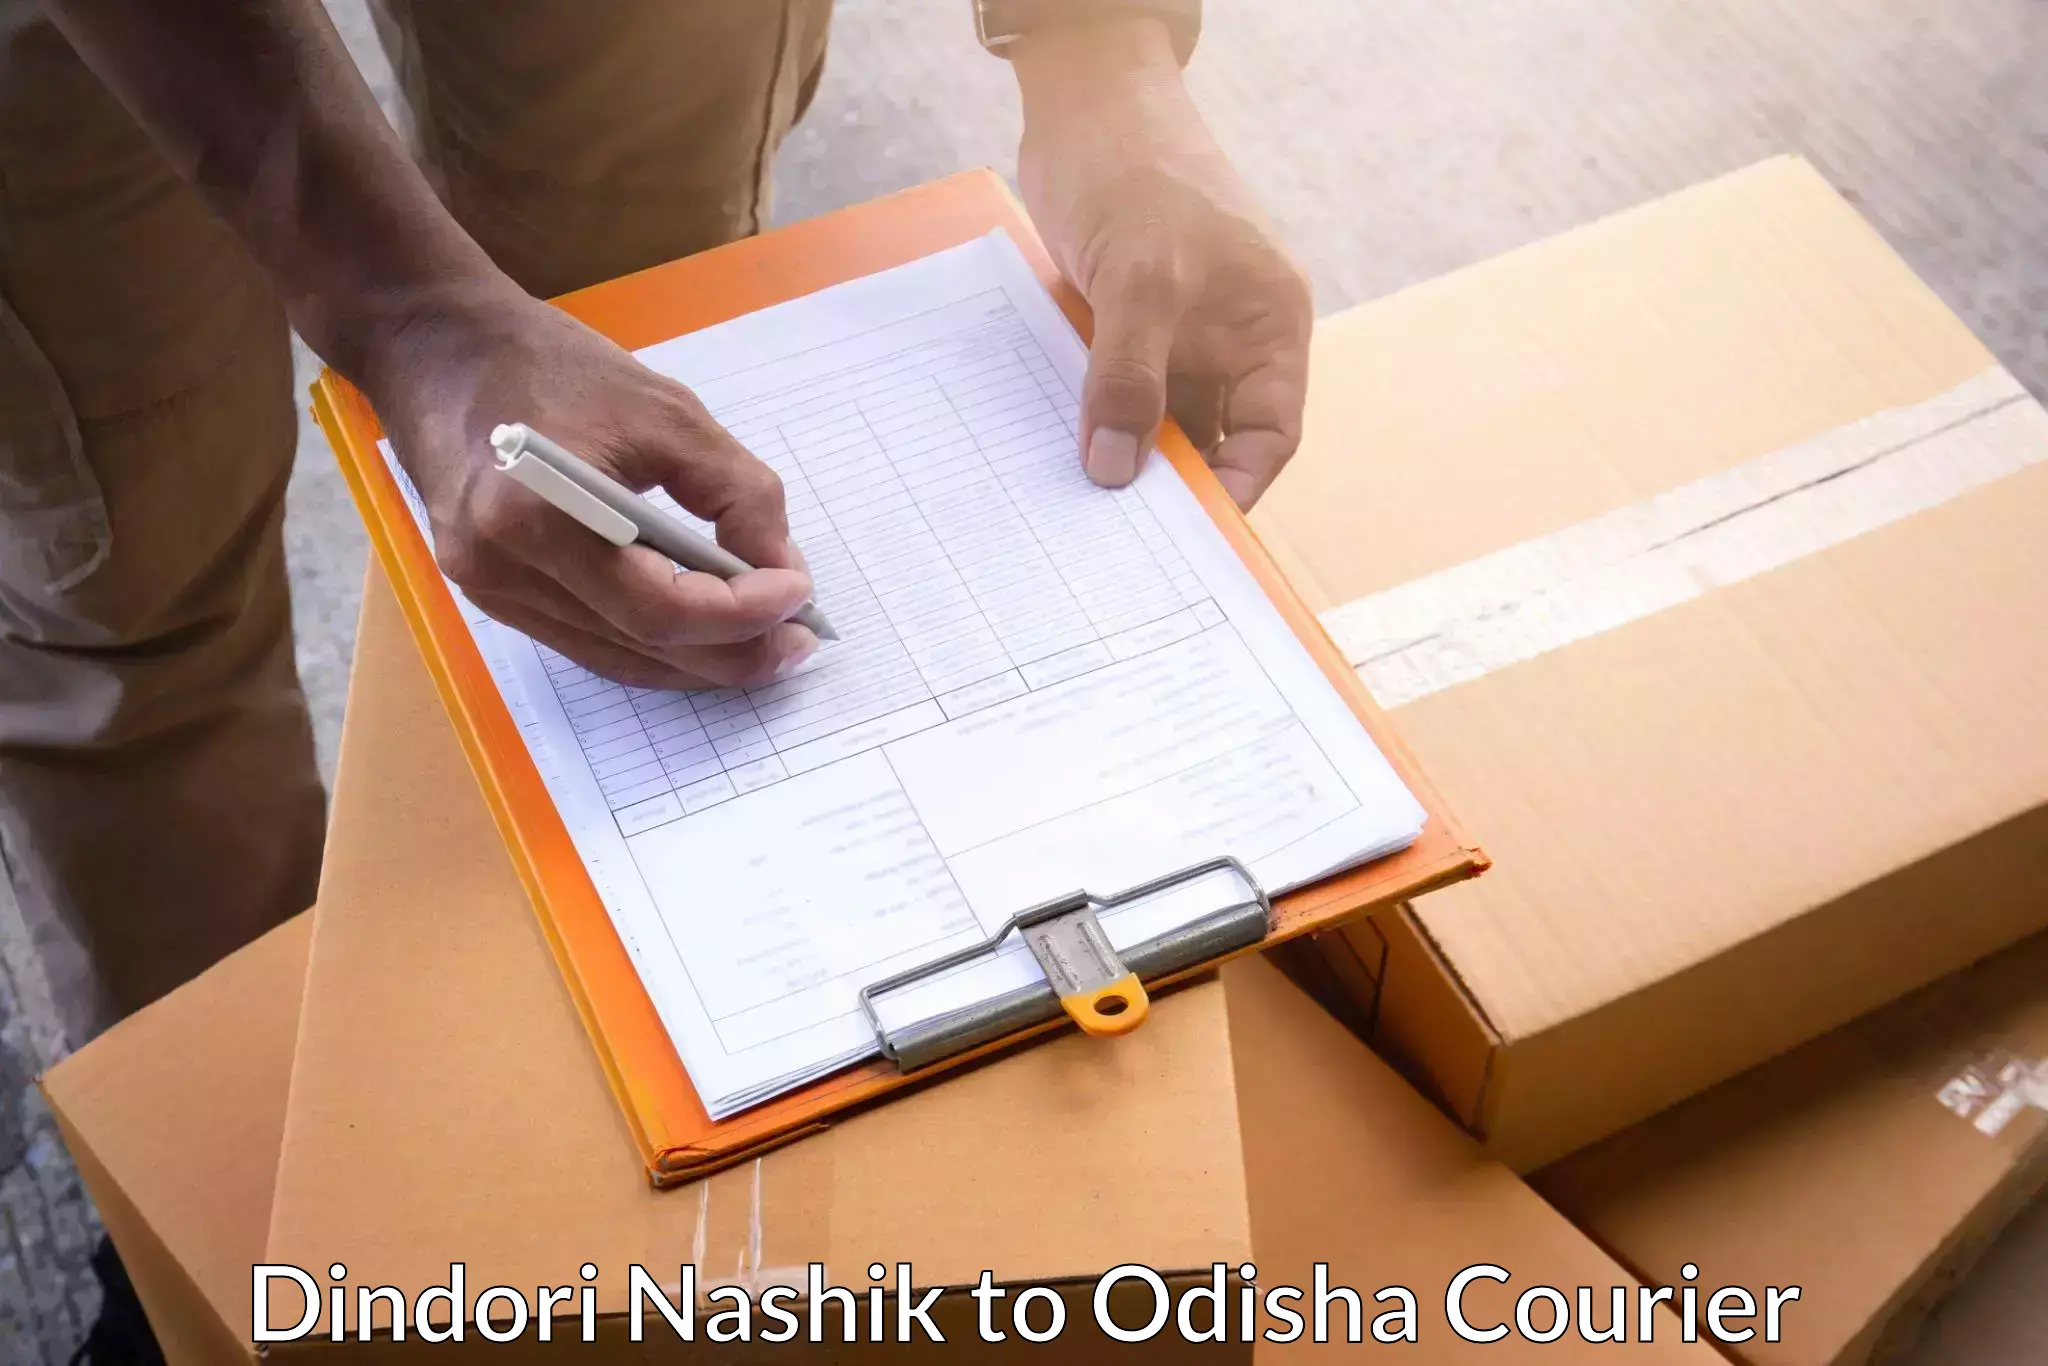 On-call courier service Dindori Nashik to Paradip Port